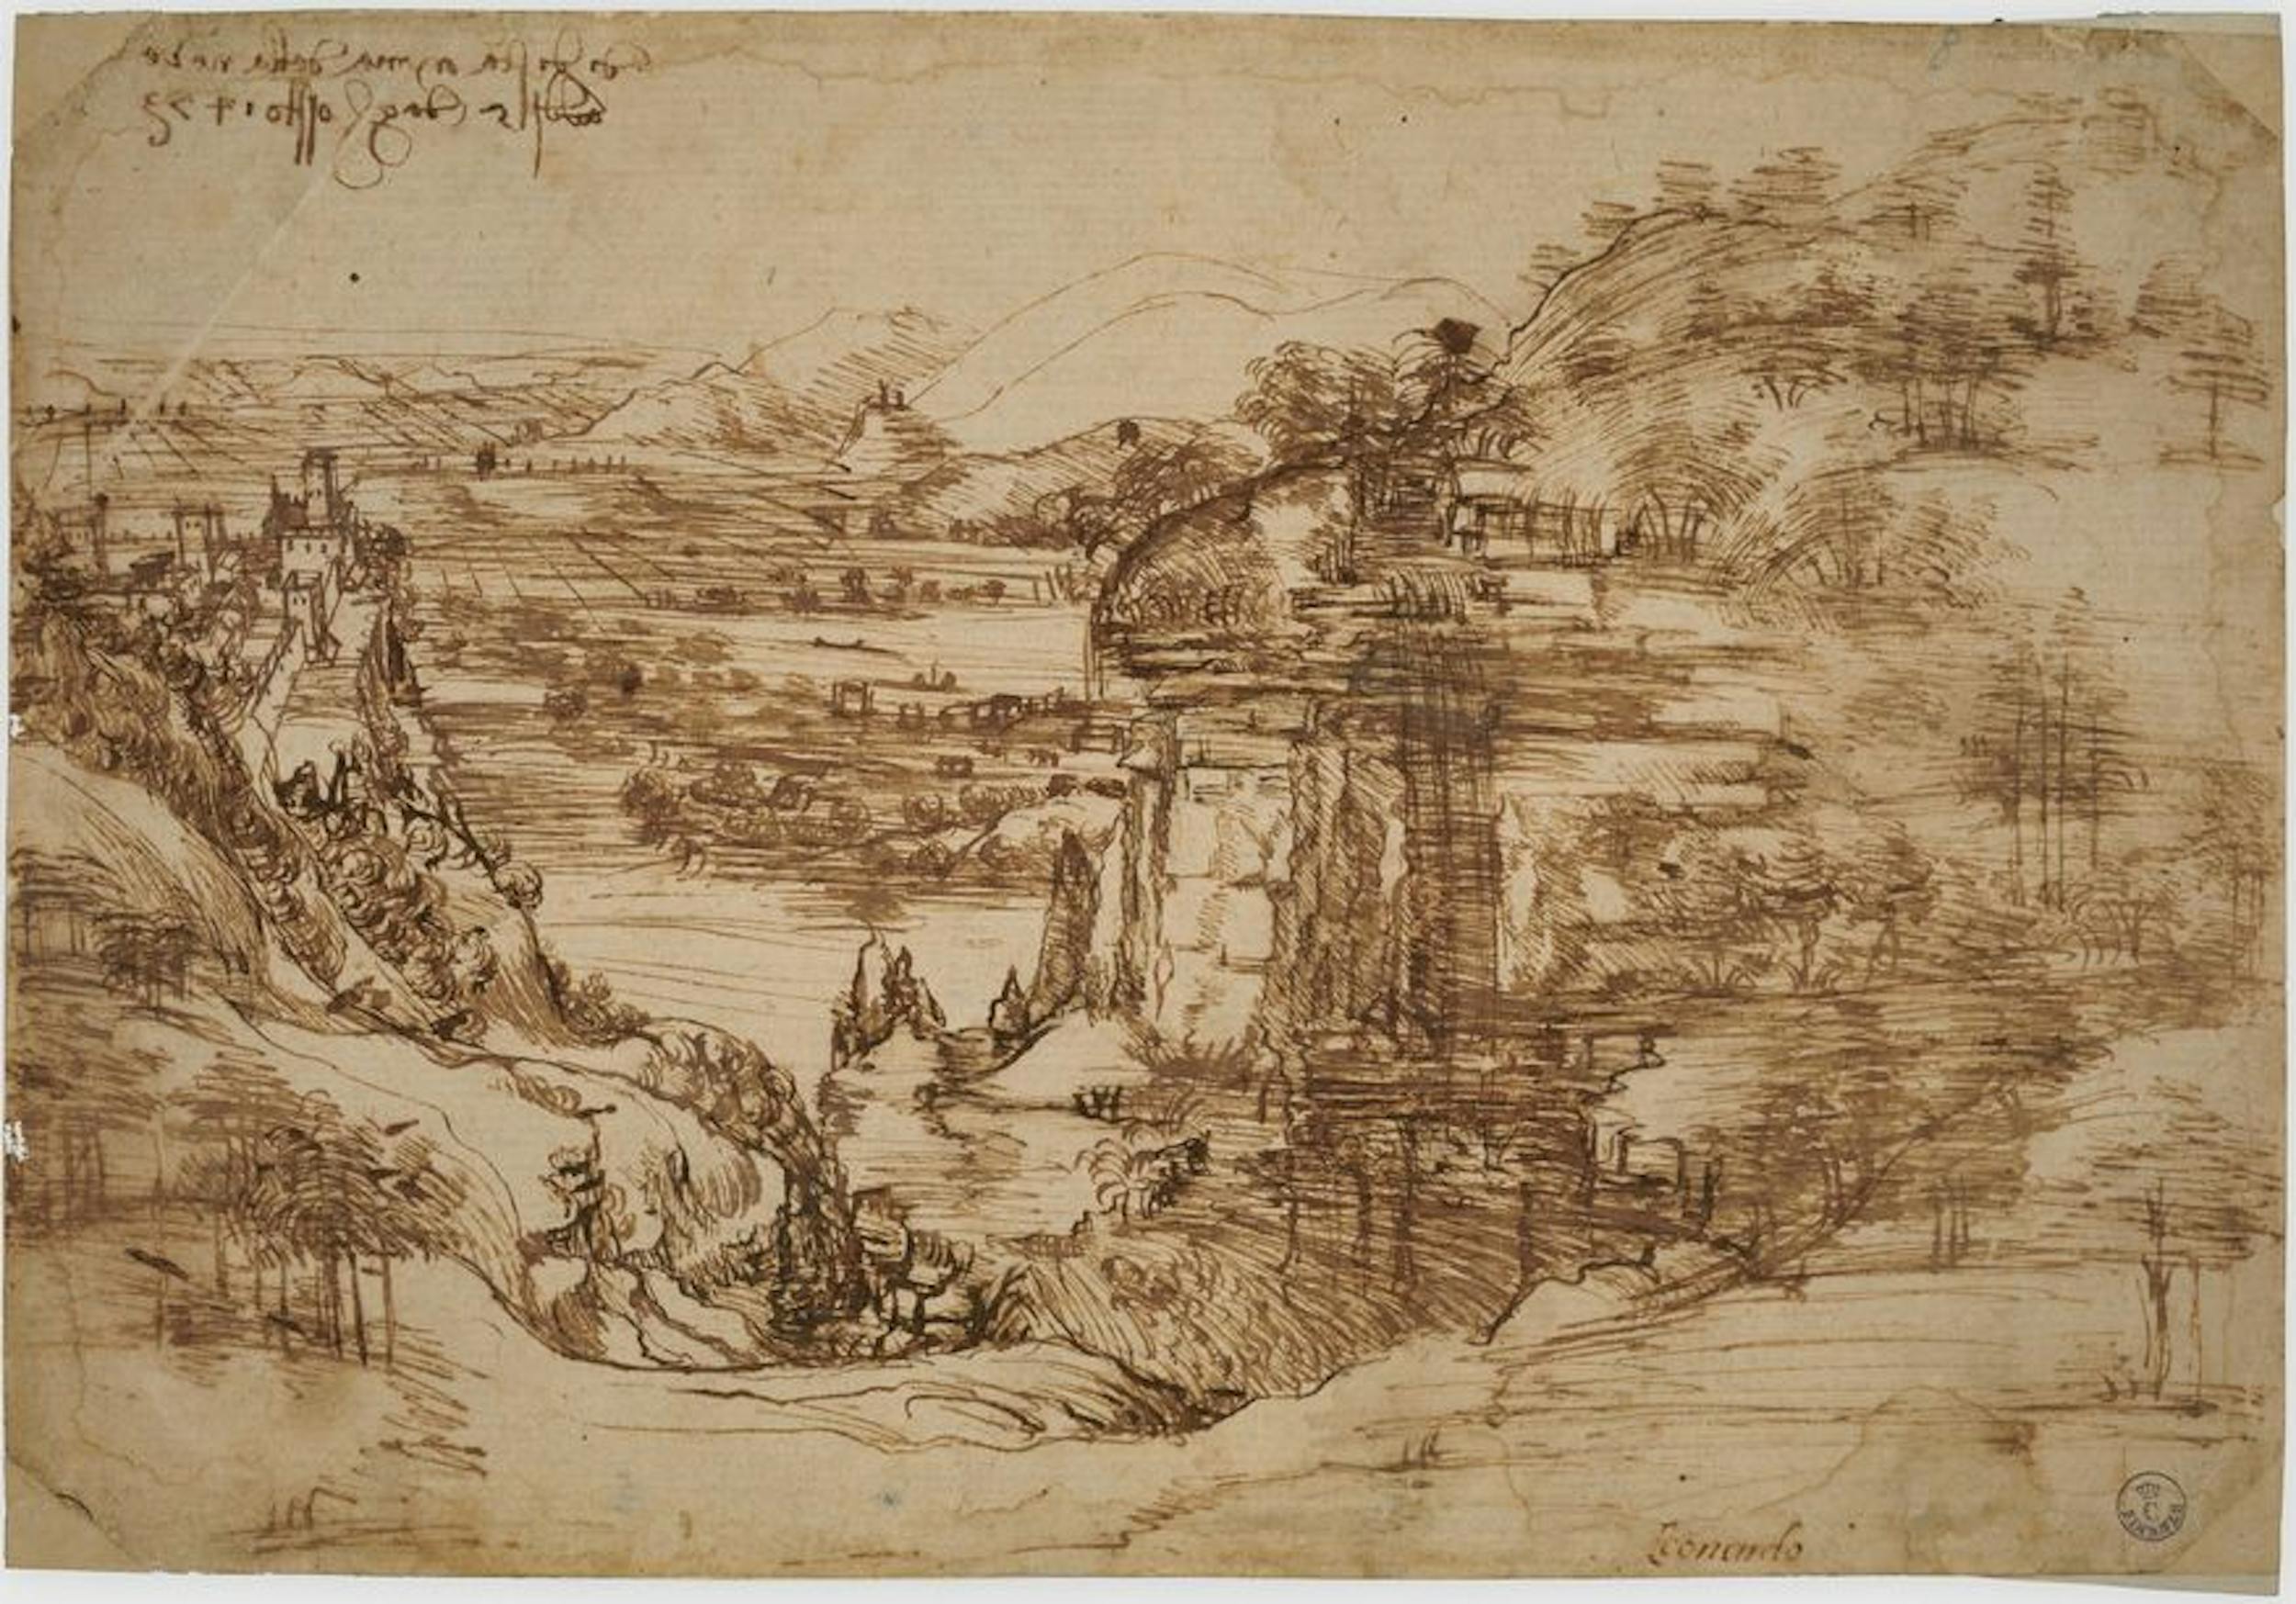 Leonardo Da Vinci, Paesaggio, inv. 8P,  recto.